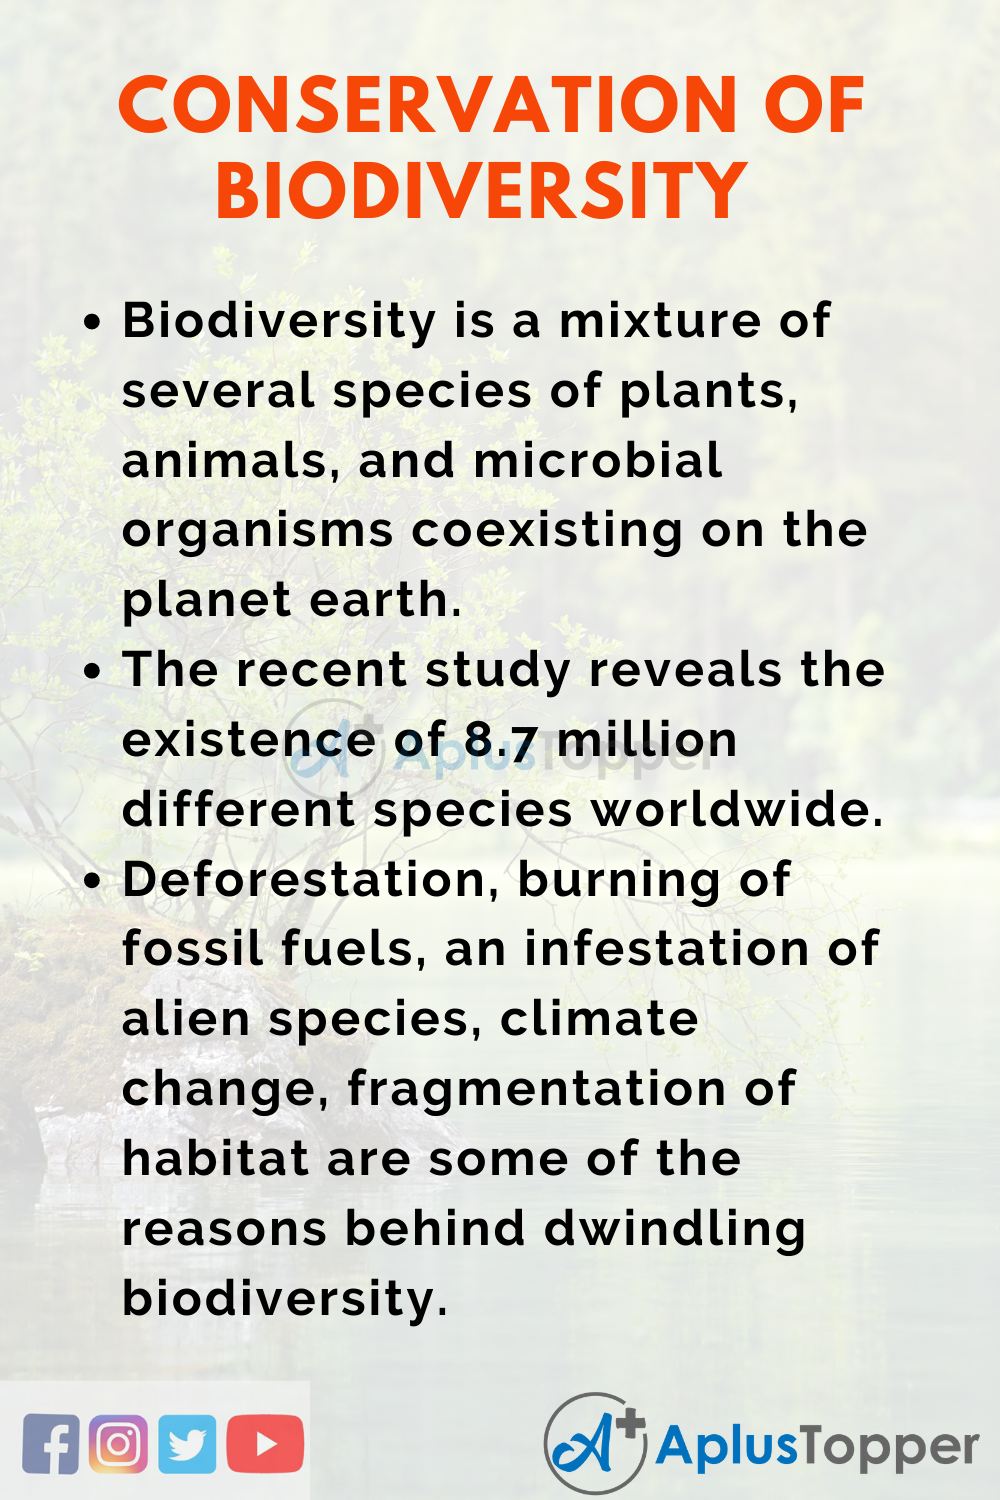 essay on biological diversity